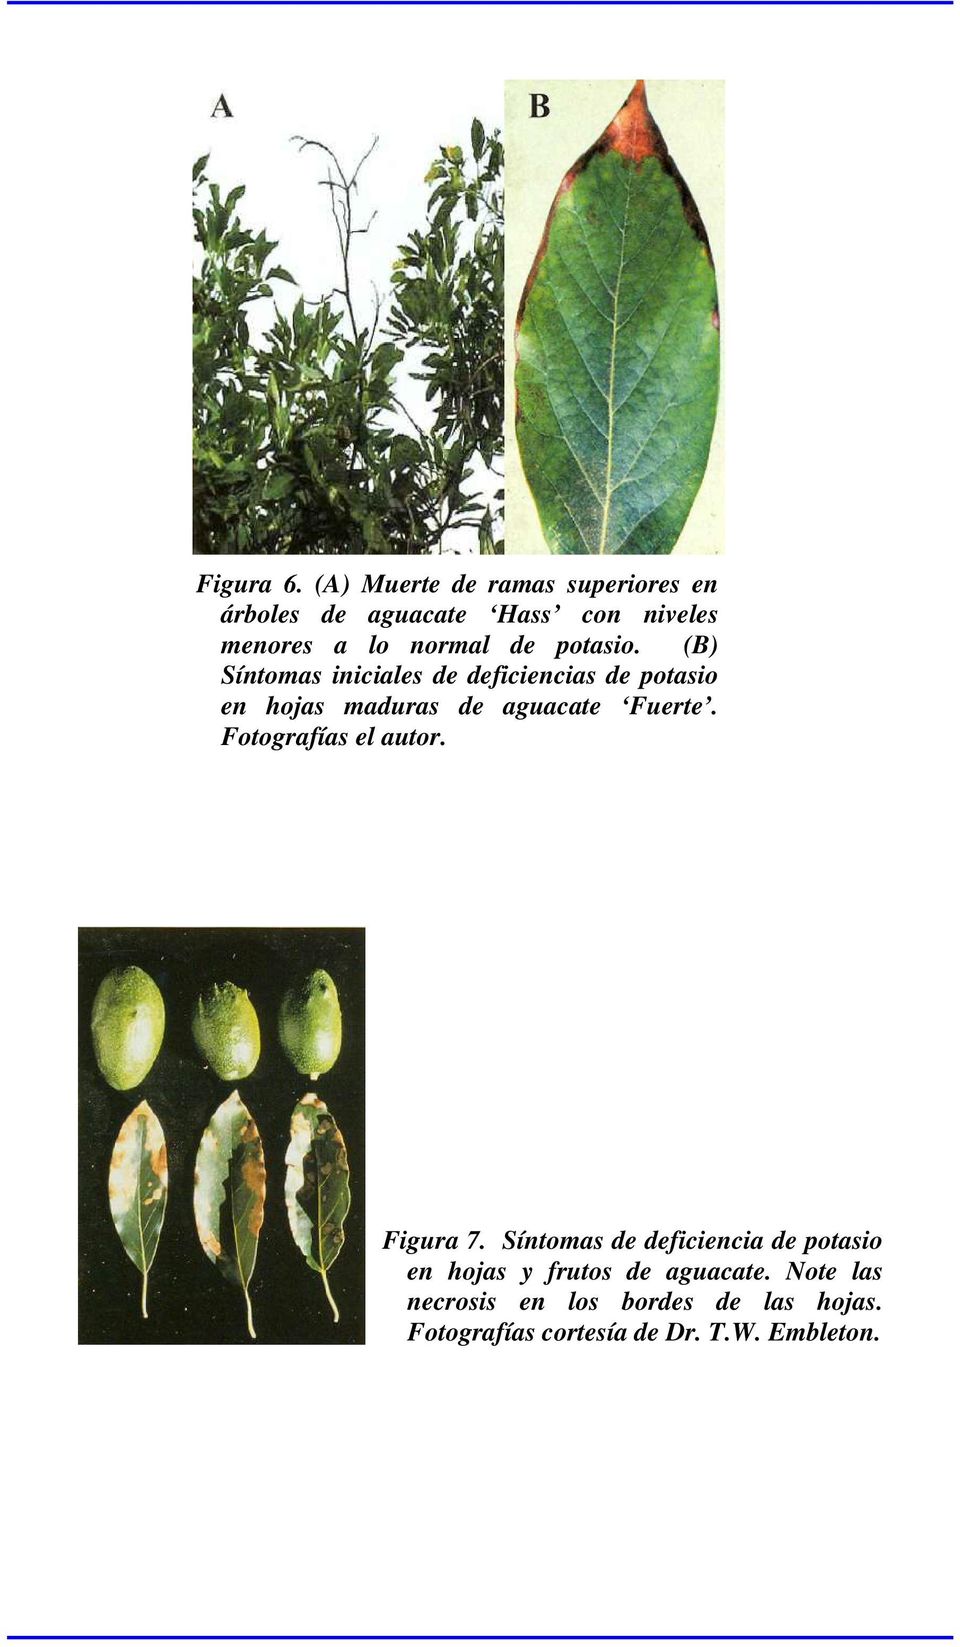 potasio. (B) Síntomas iniciales de deficiencias de potasio en hojas maduras de aguacate Fuerte.